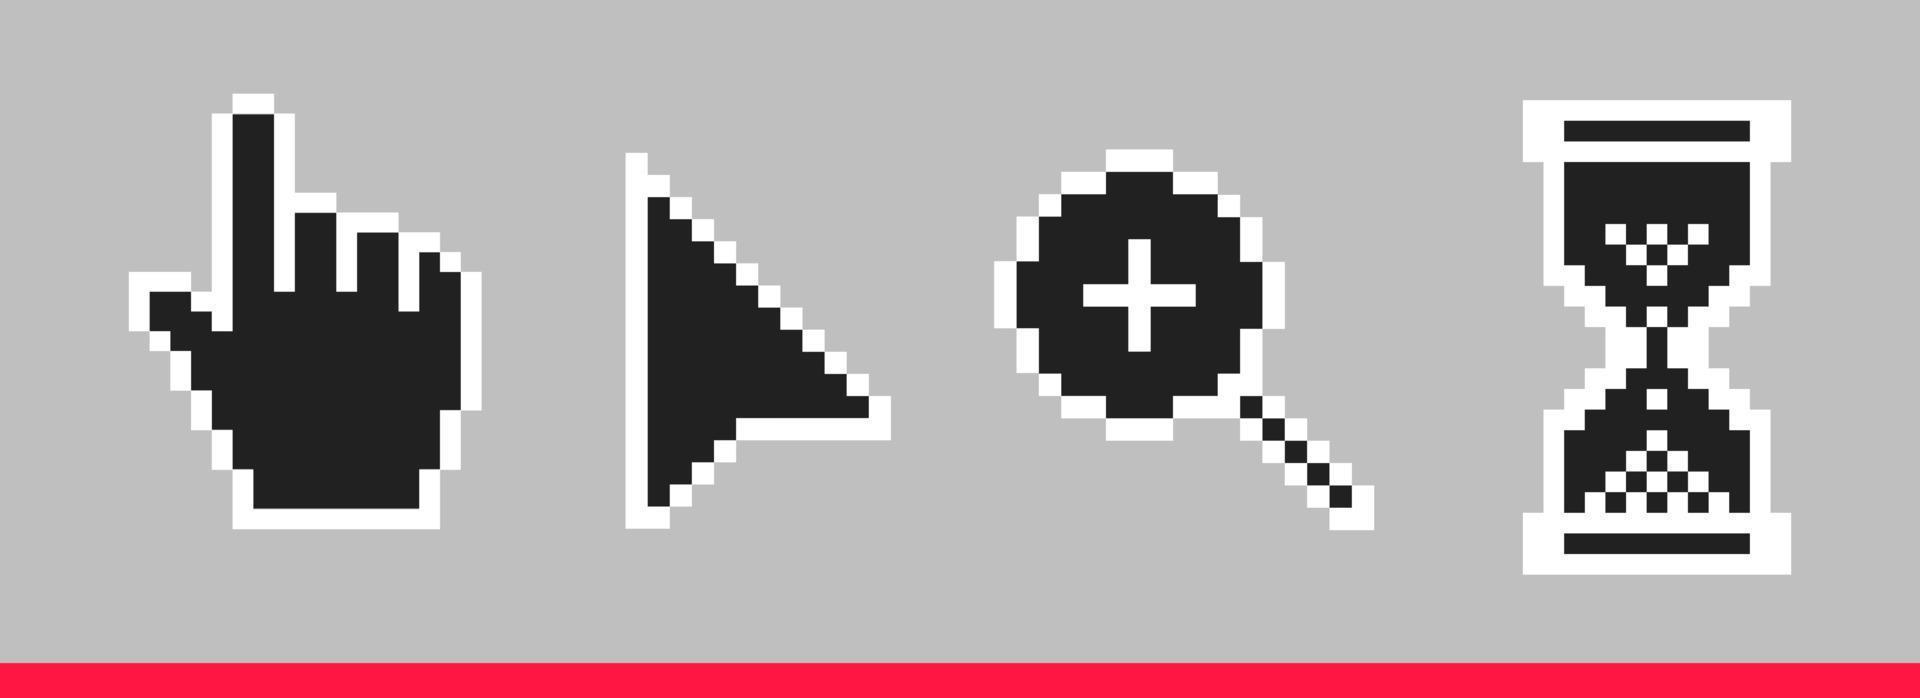 set di illustrazioni vettoriali per le icone del cursore del mouse con pixel di freccia, mano, lente di ingrandimento e clessidra in bianco e nero